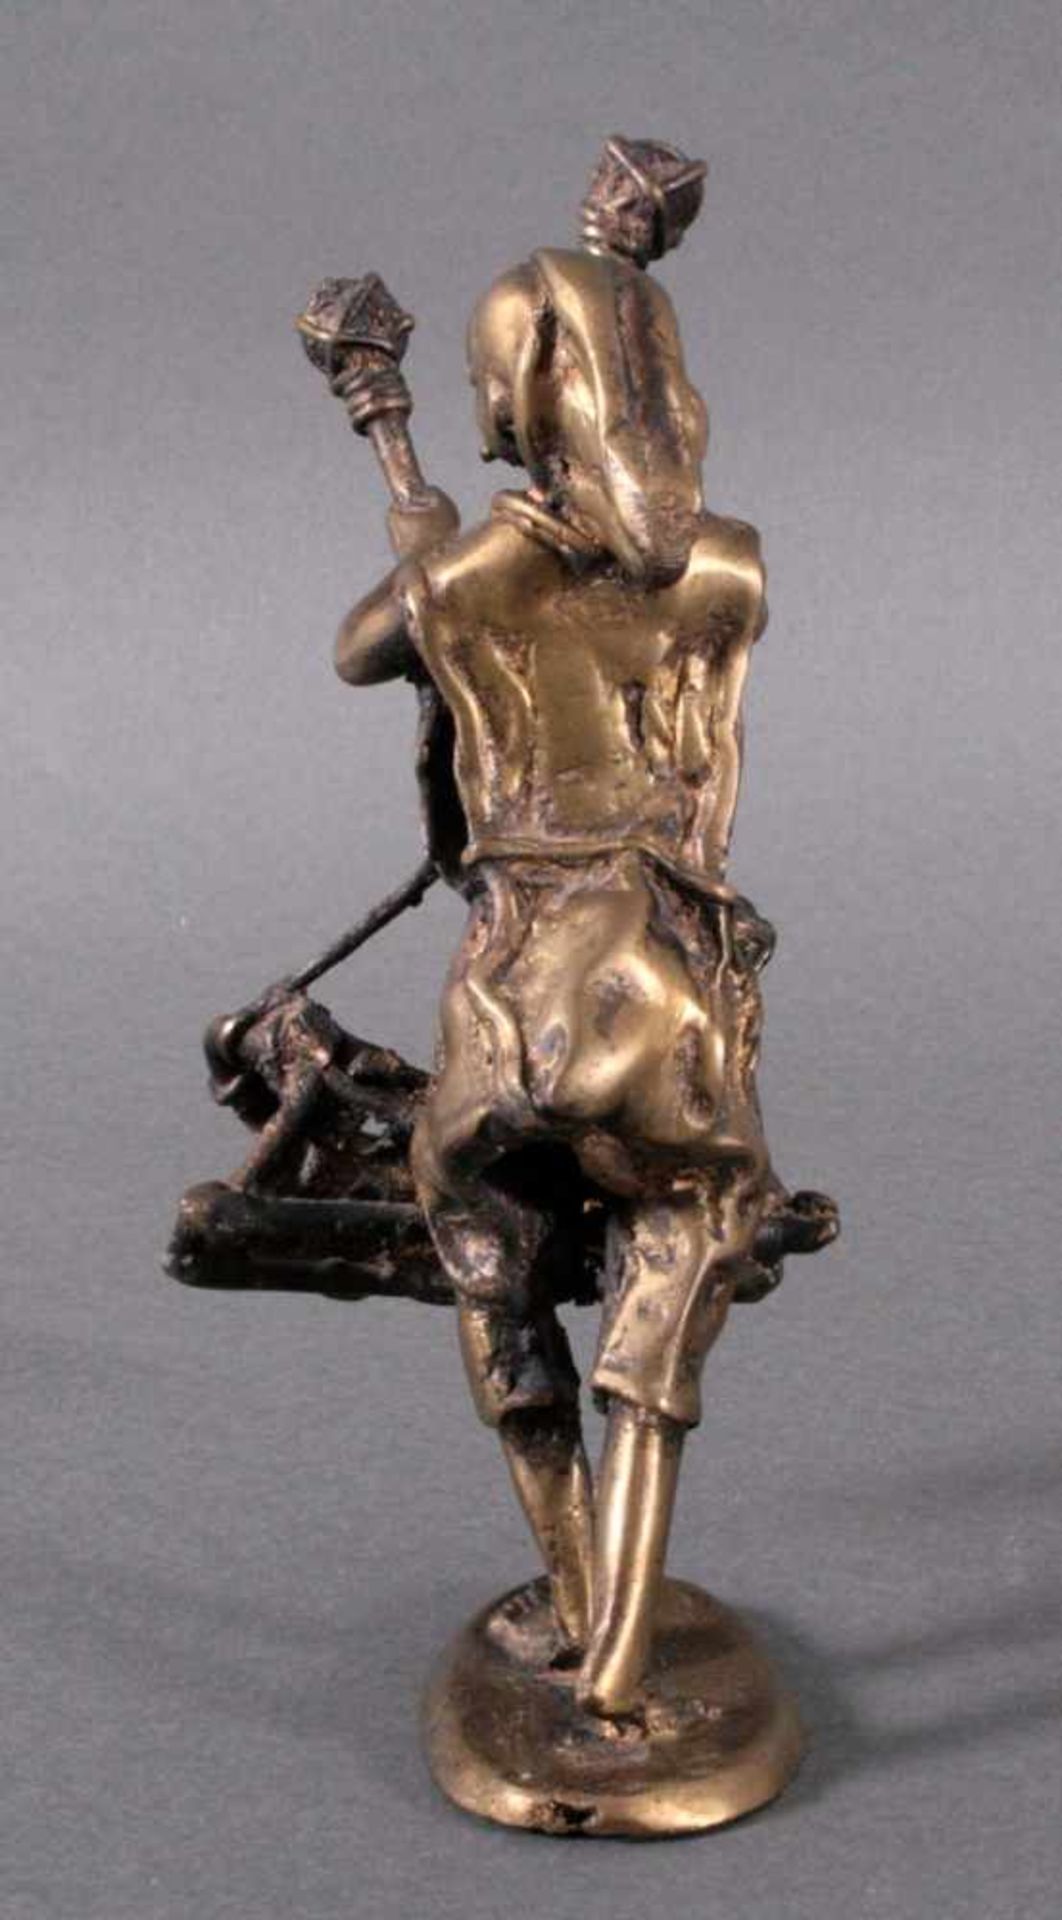 Bronzefigur ChinaGlockenspieler, ovaler Stand, detailliert gearbeitet,verlorene Form, ca. H- 21 cm - Bild 4 aus 5